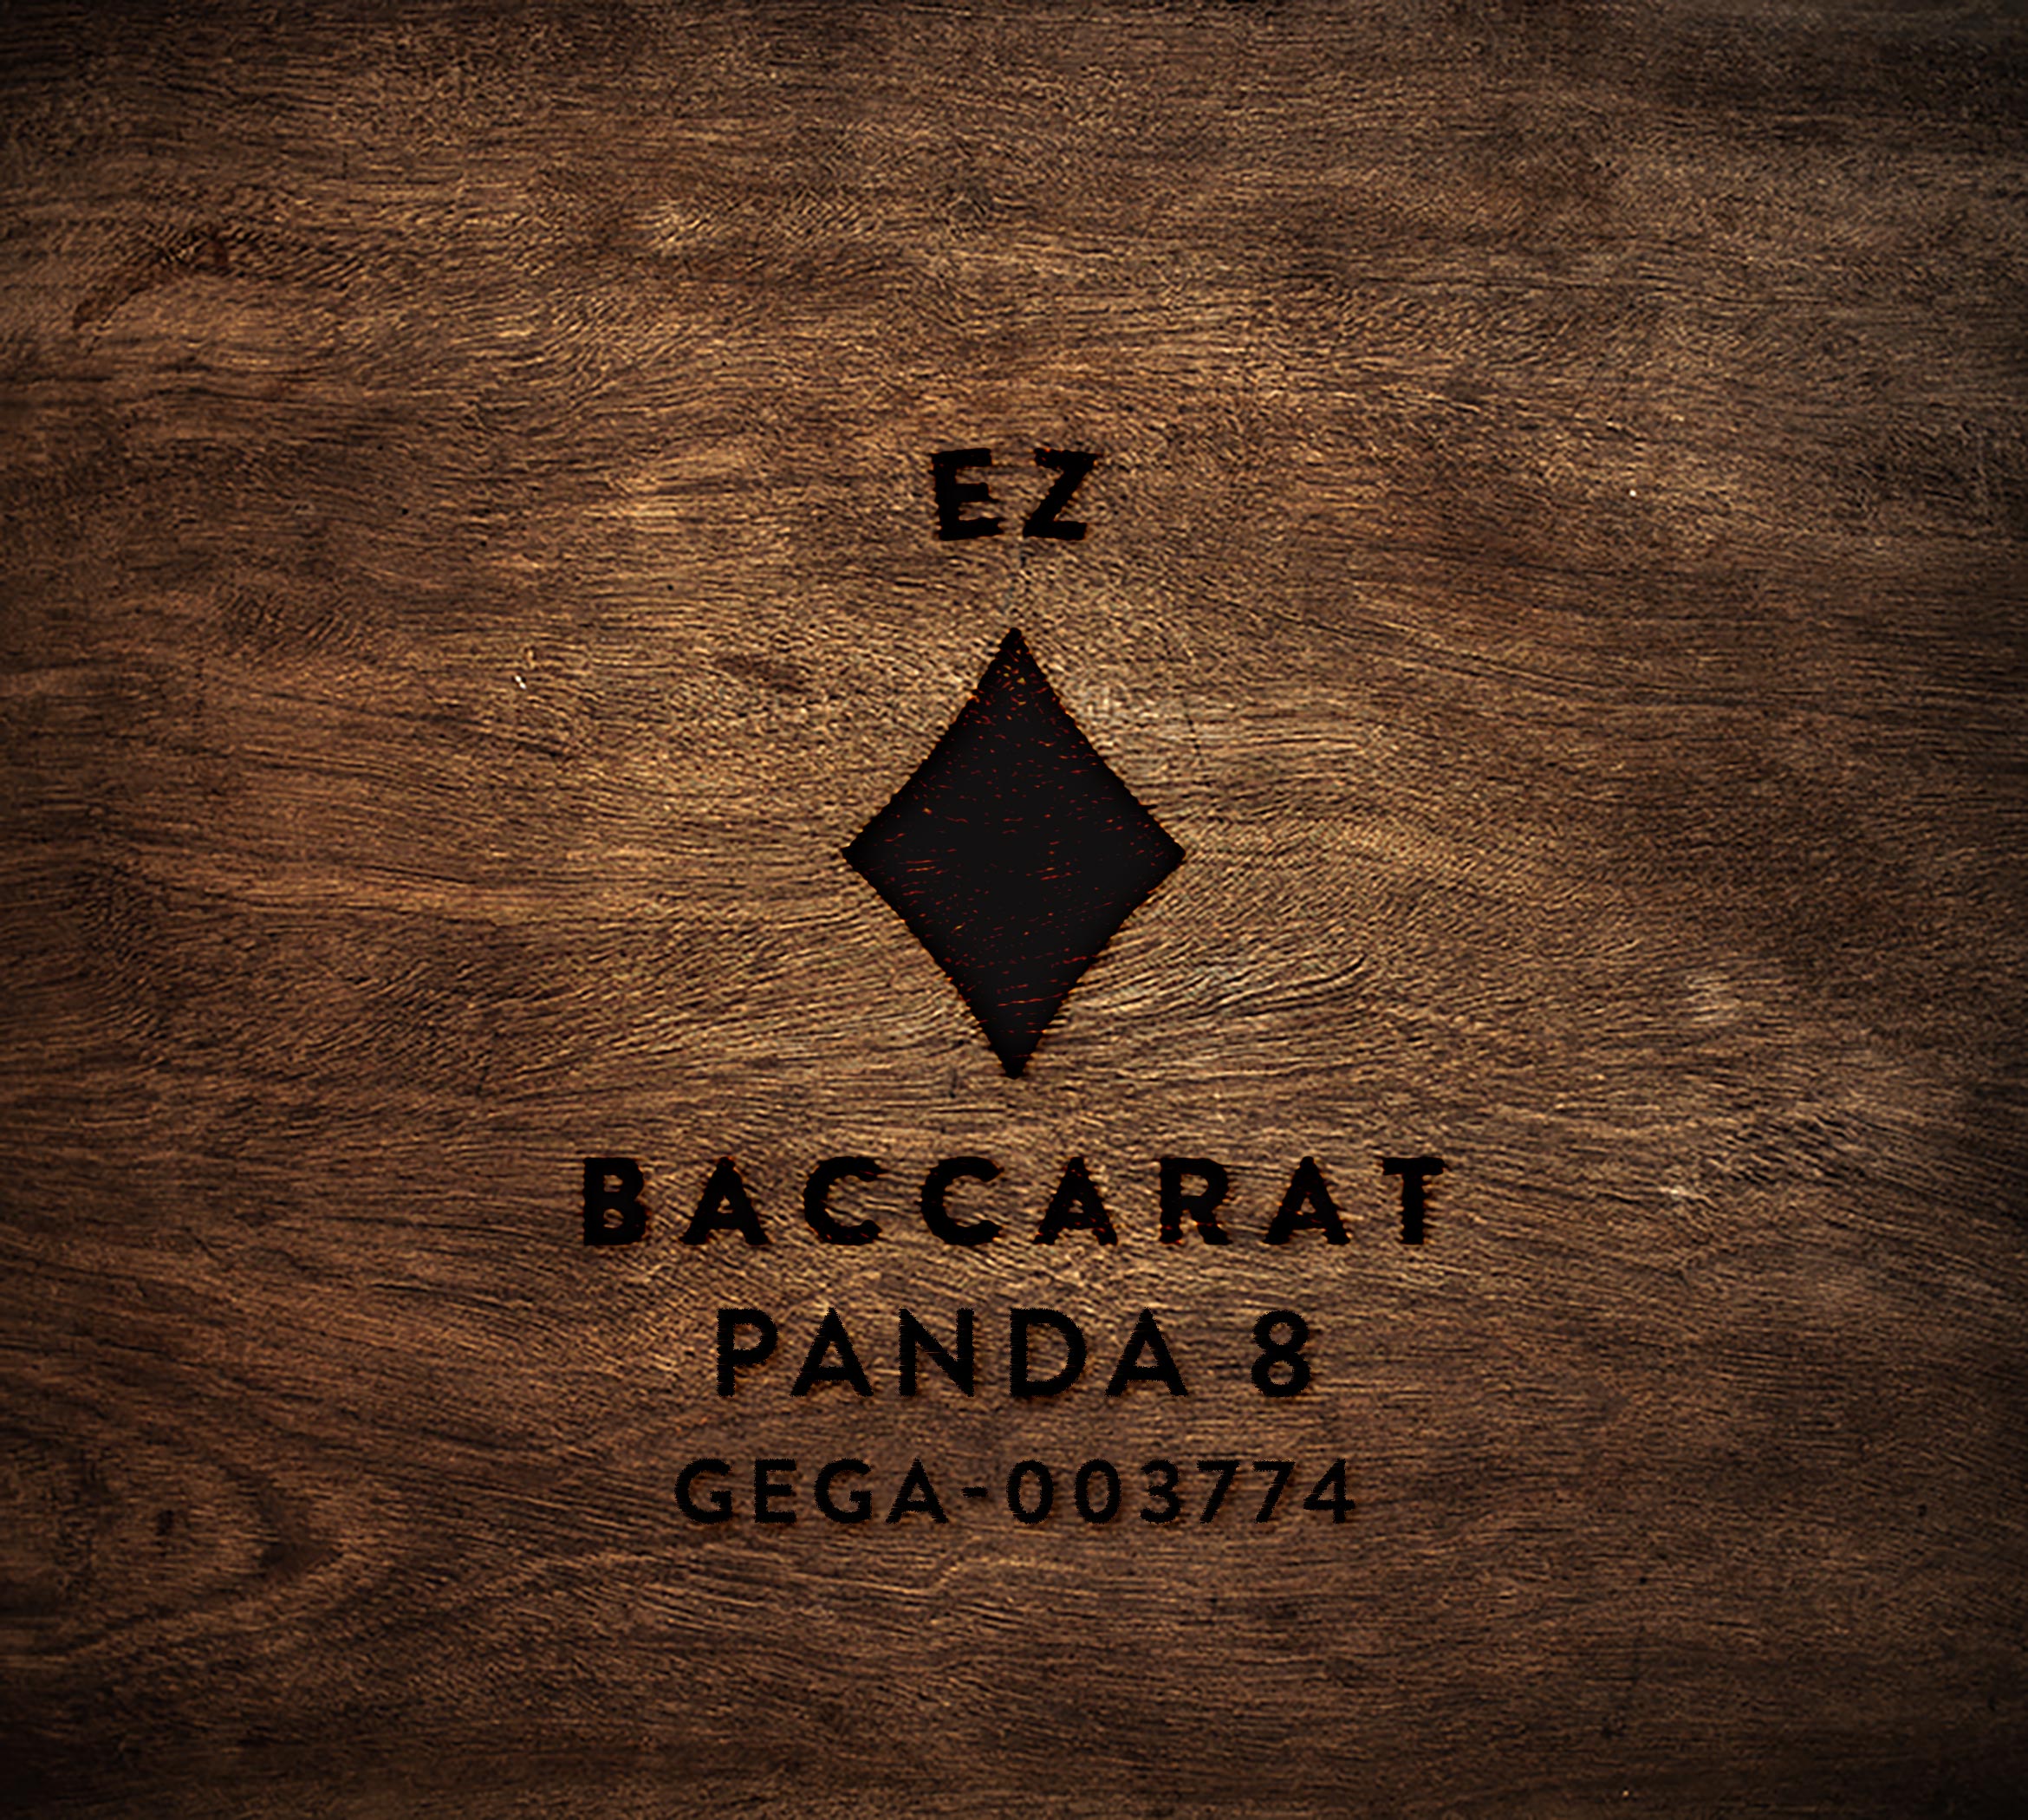 EZ Baccarat Panda 8 GEGA-003774 wood block